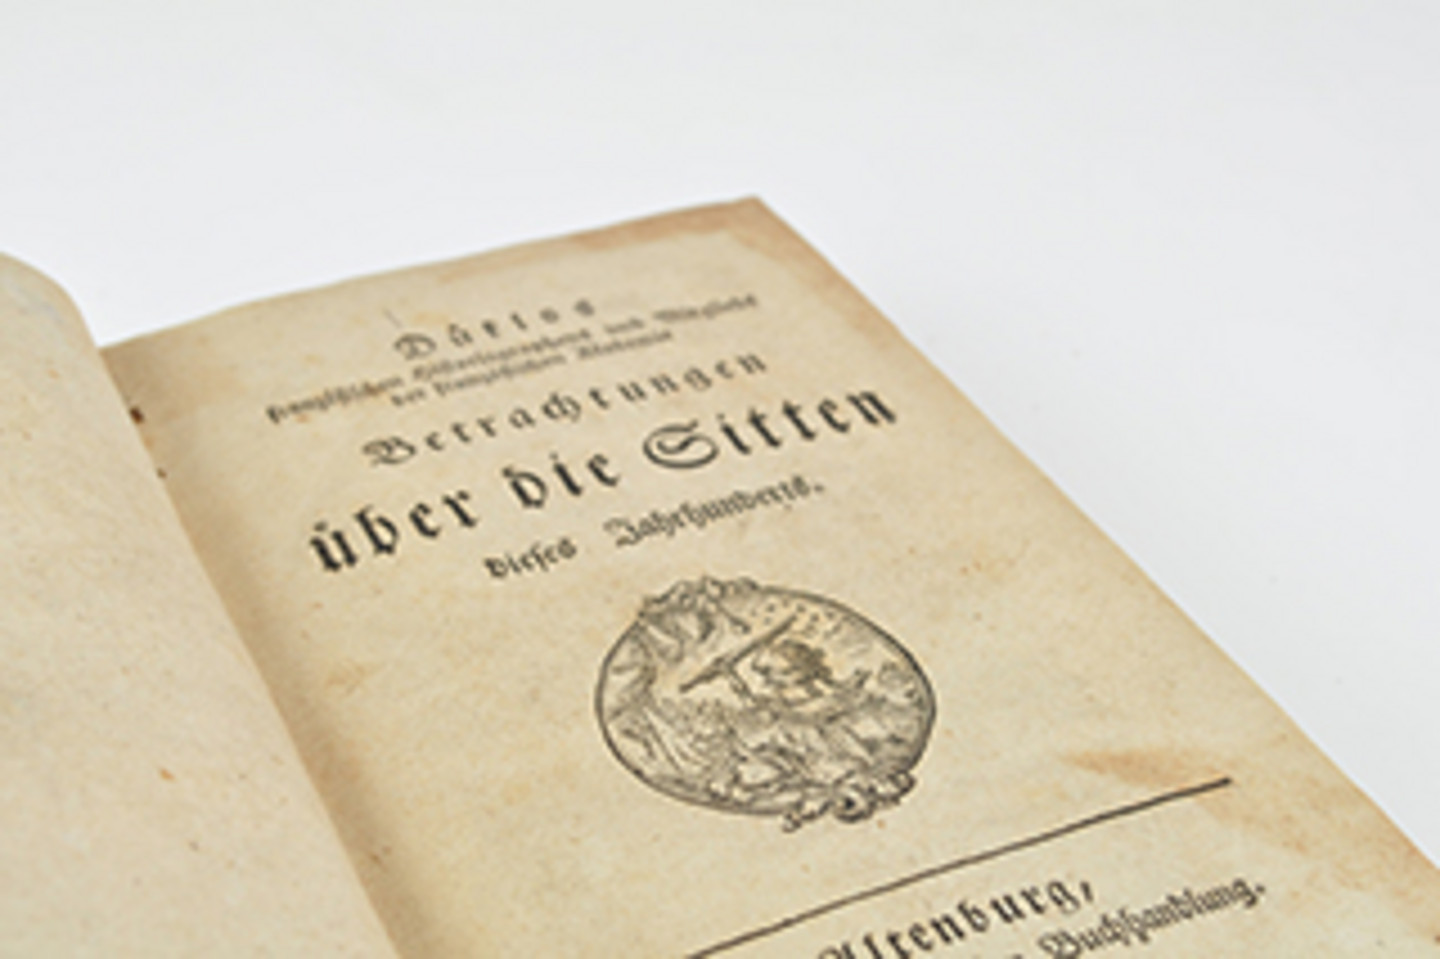 Foto des Titelblatts von "Betrachtungen über die Sitten dieses Jahrhunderts". Darunter befindet sich eine Art Wappen.